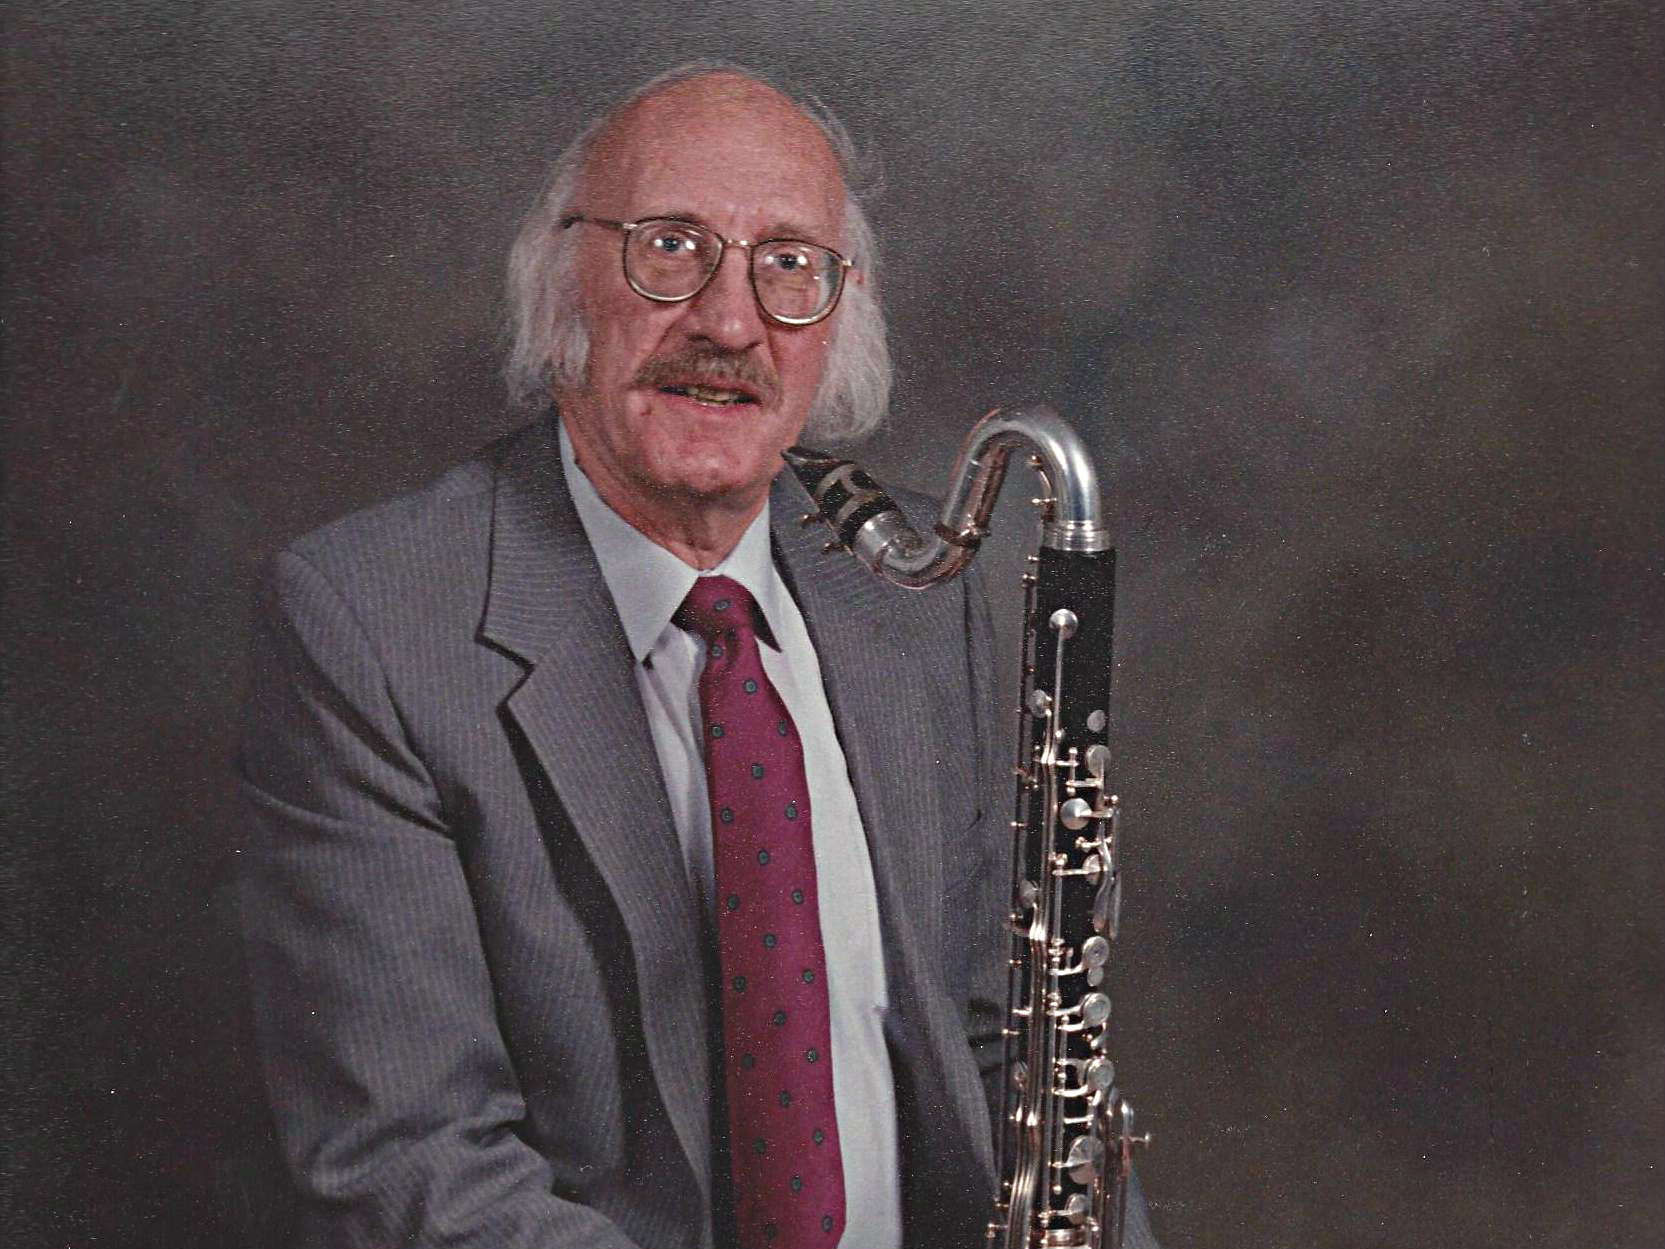 Colorado clarinetist Don Ambler, 1928-2013